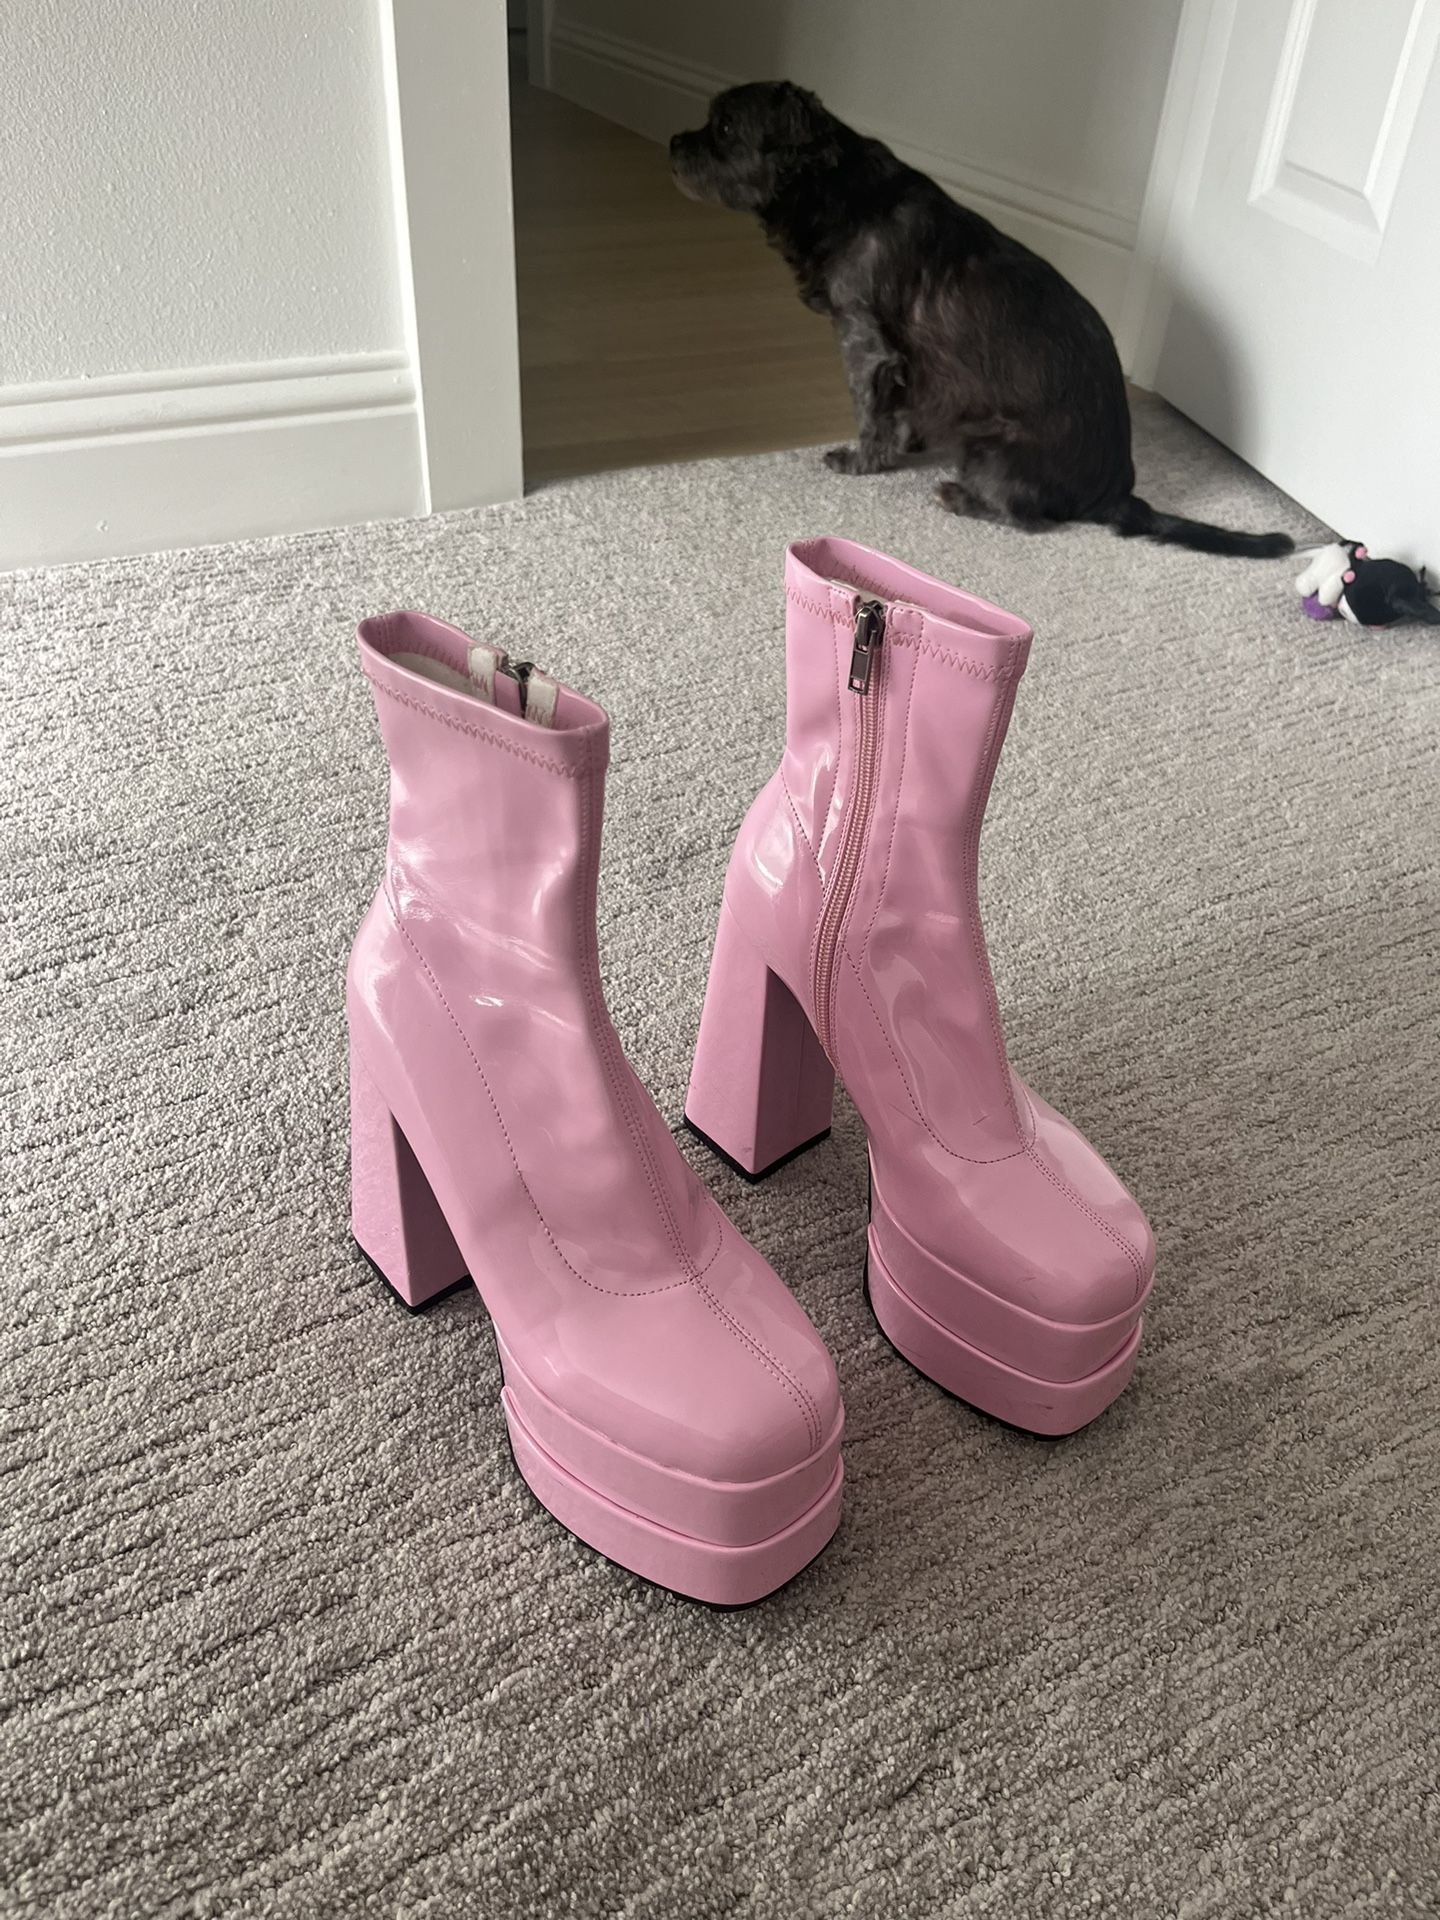 LAMODA Boots Size 5